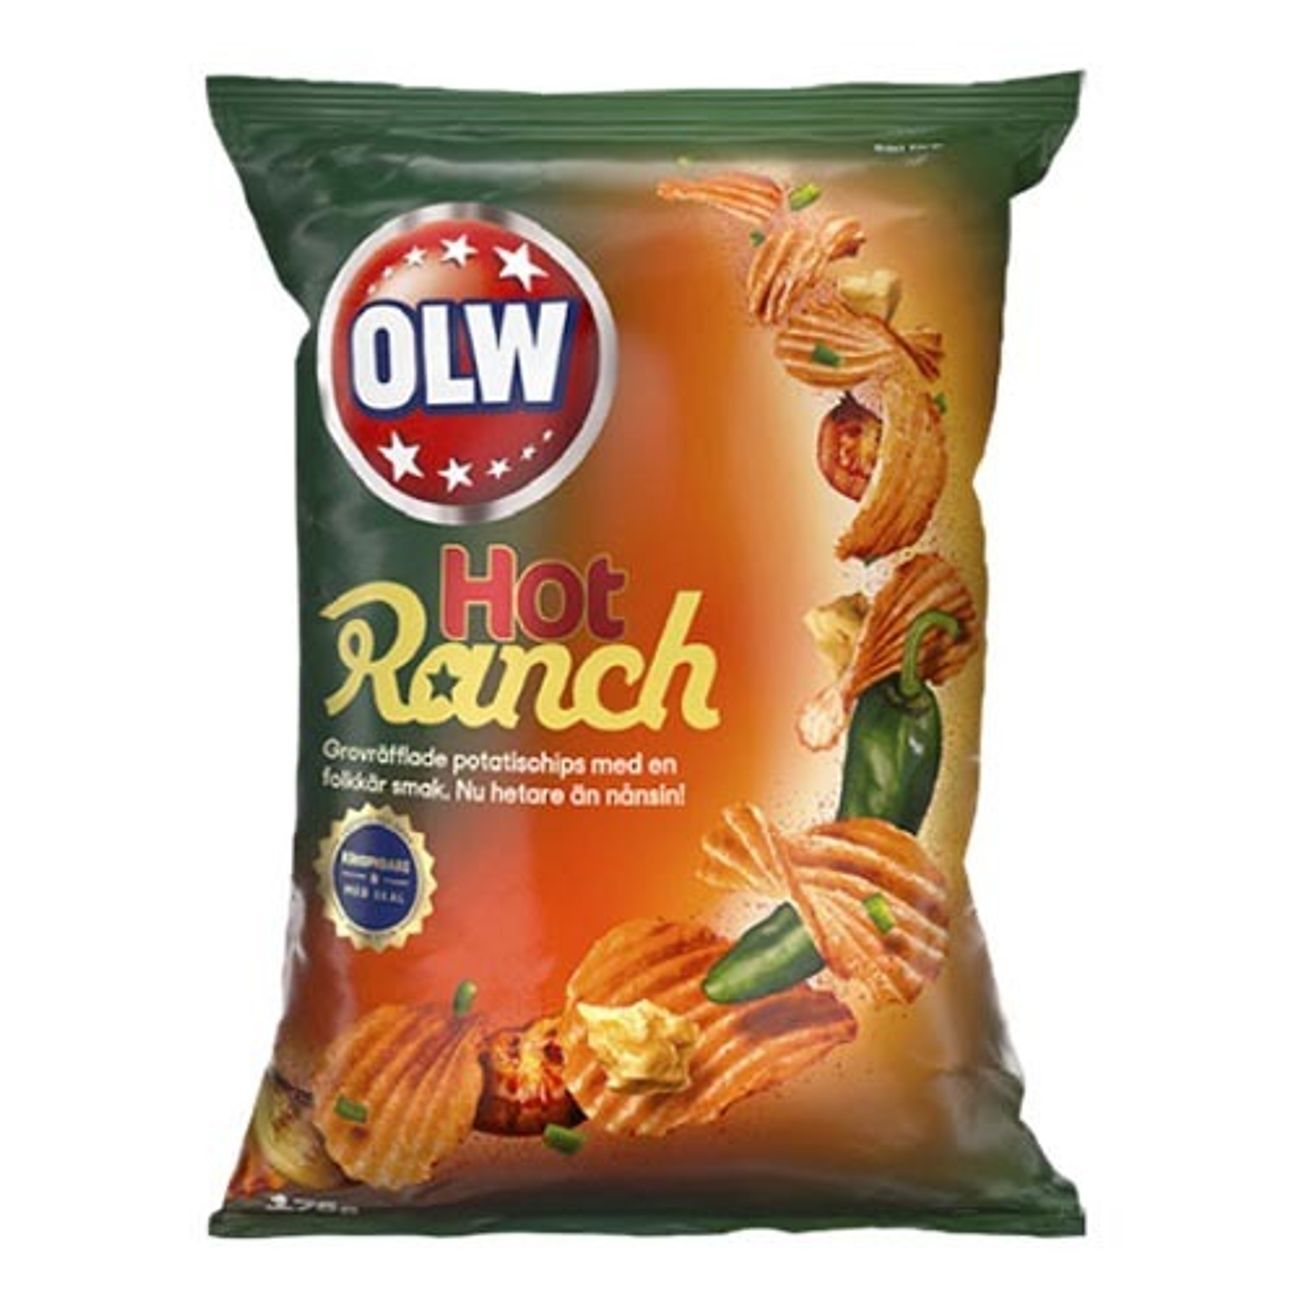 olw-hot-ranch-1